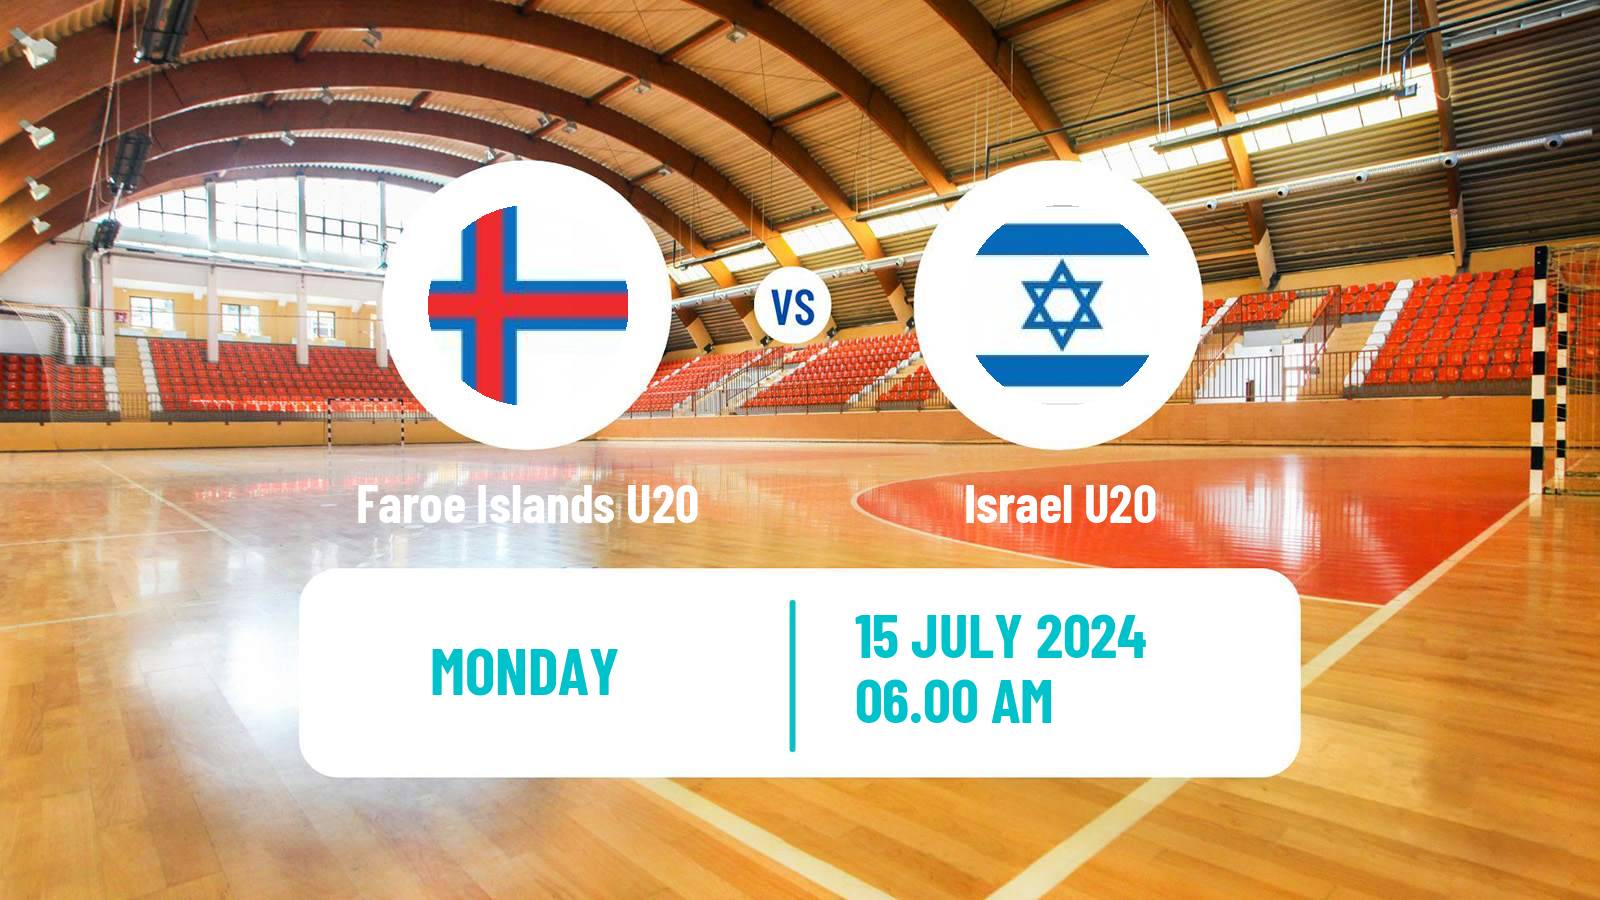 Handball European Championship U20 Handball Faroe Islands U20 - Israel U20